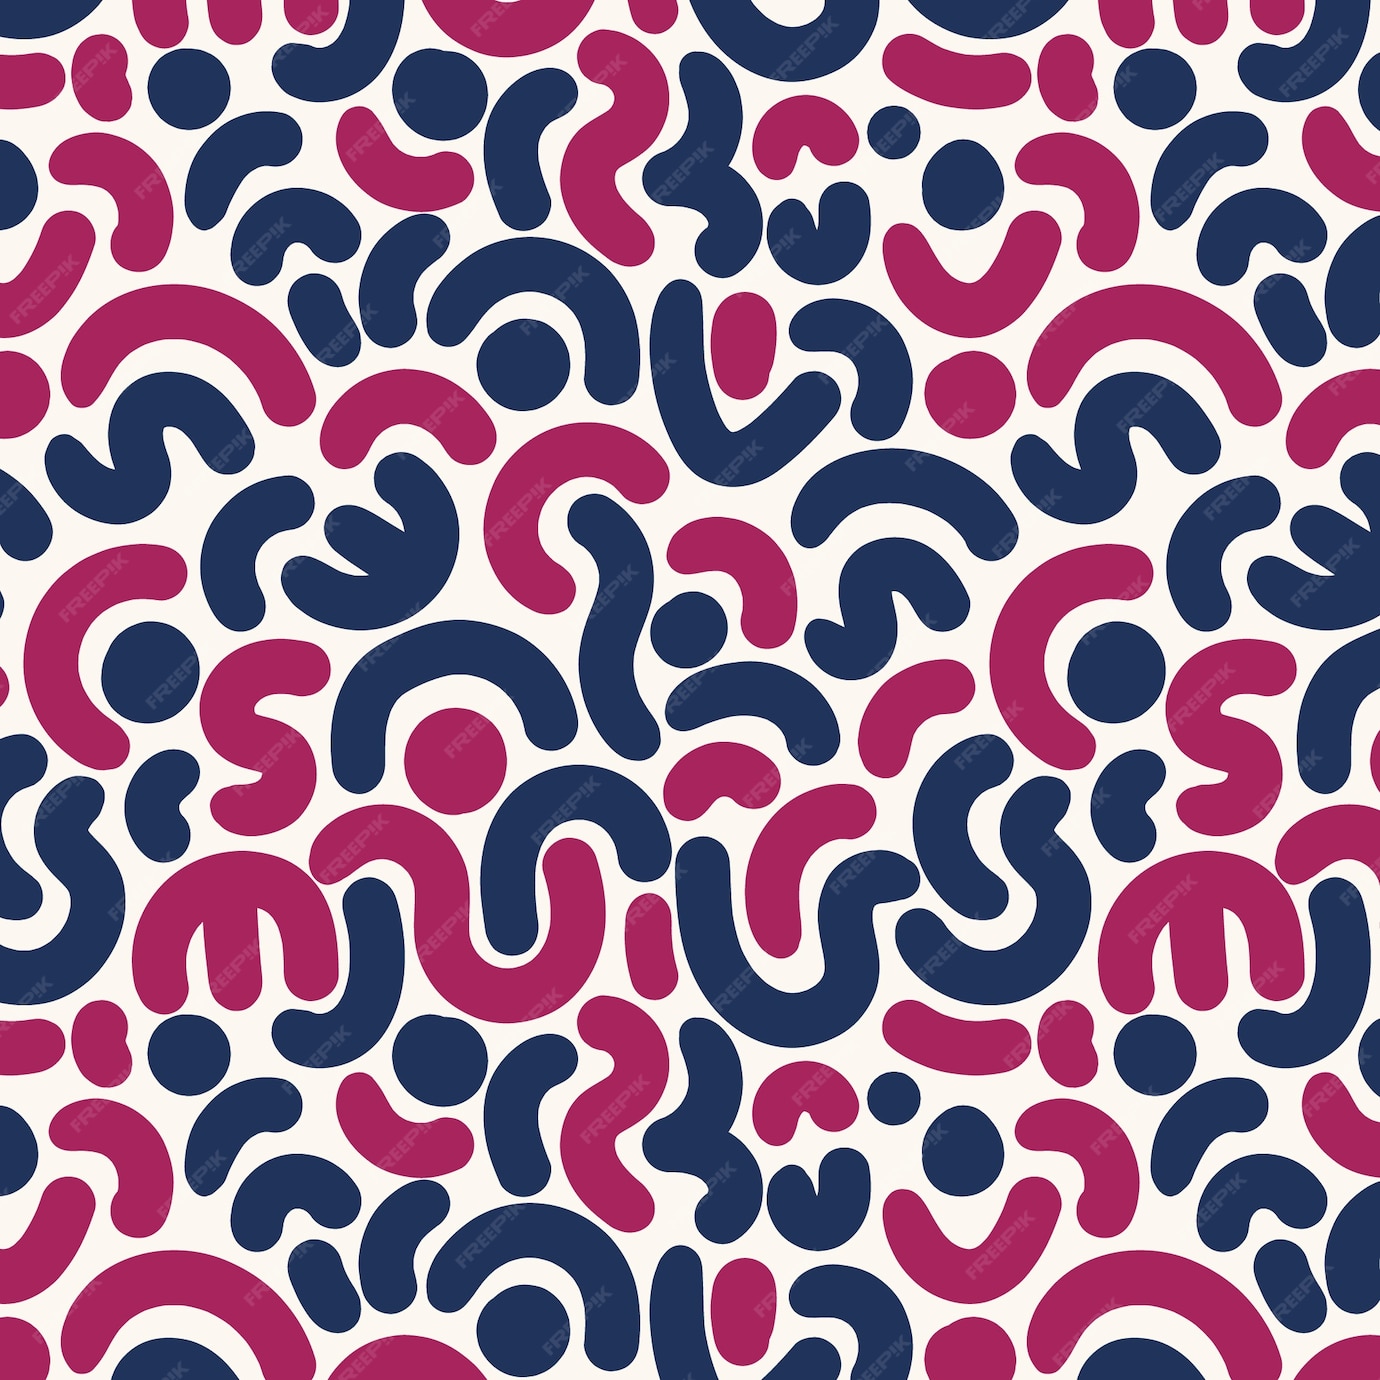 الگوی طراحی الگوی رنگ های A/W- دانلود رایگان - پترن پارچه و لباس